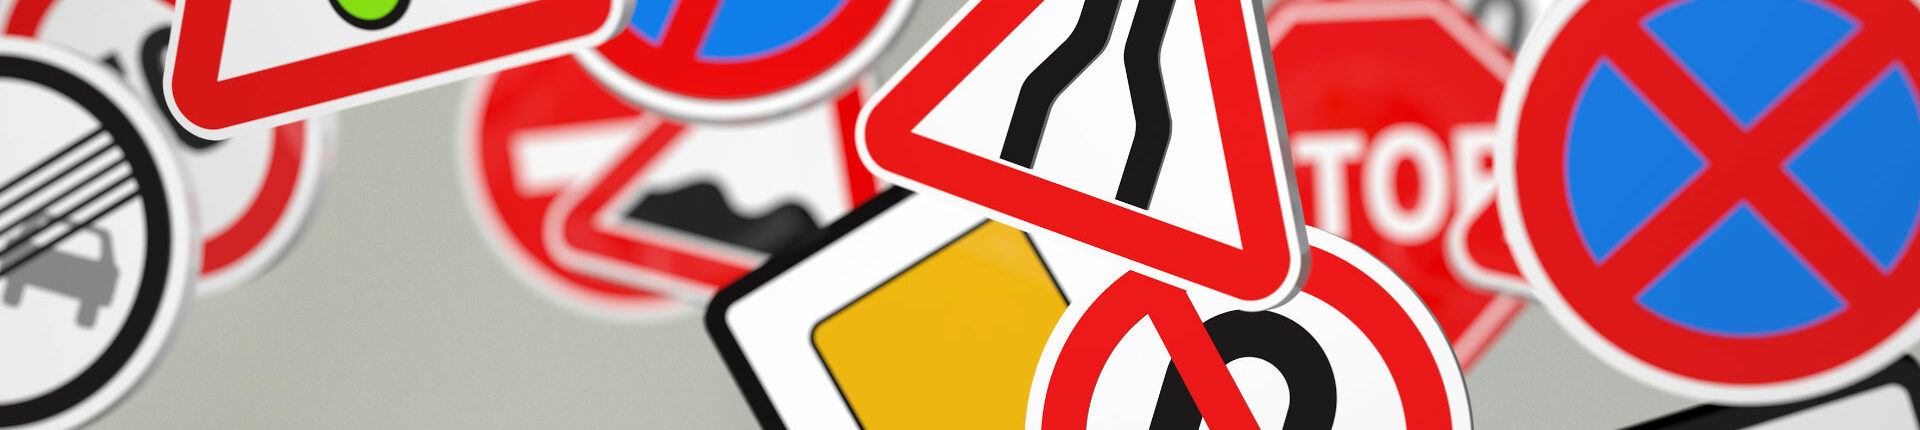 Passage du Tour de France – Restrictions de circulation